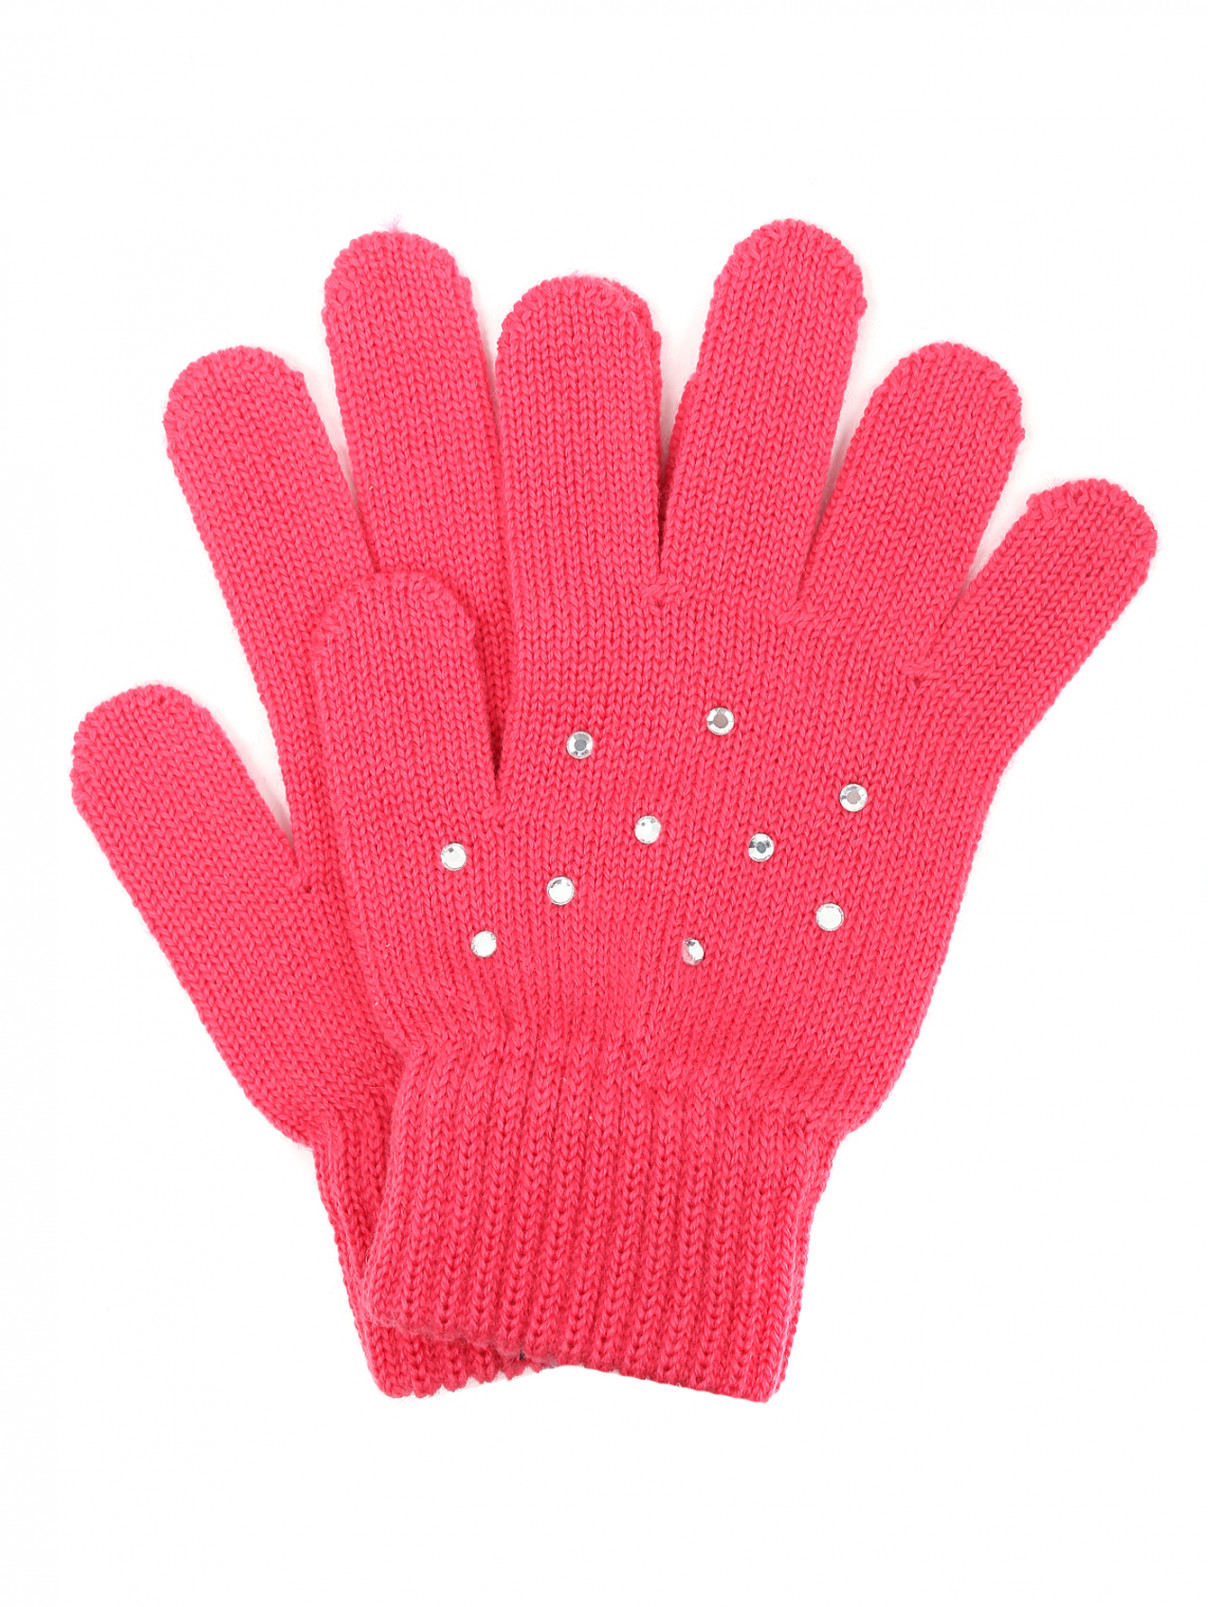 Перчатки трикотажные из шерсти со стразами Catya  –  Общий вид  – Цвет:  Розовый